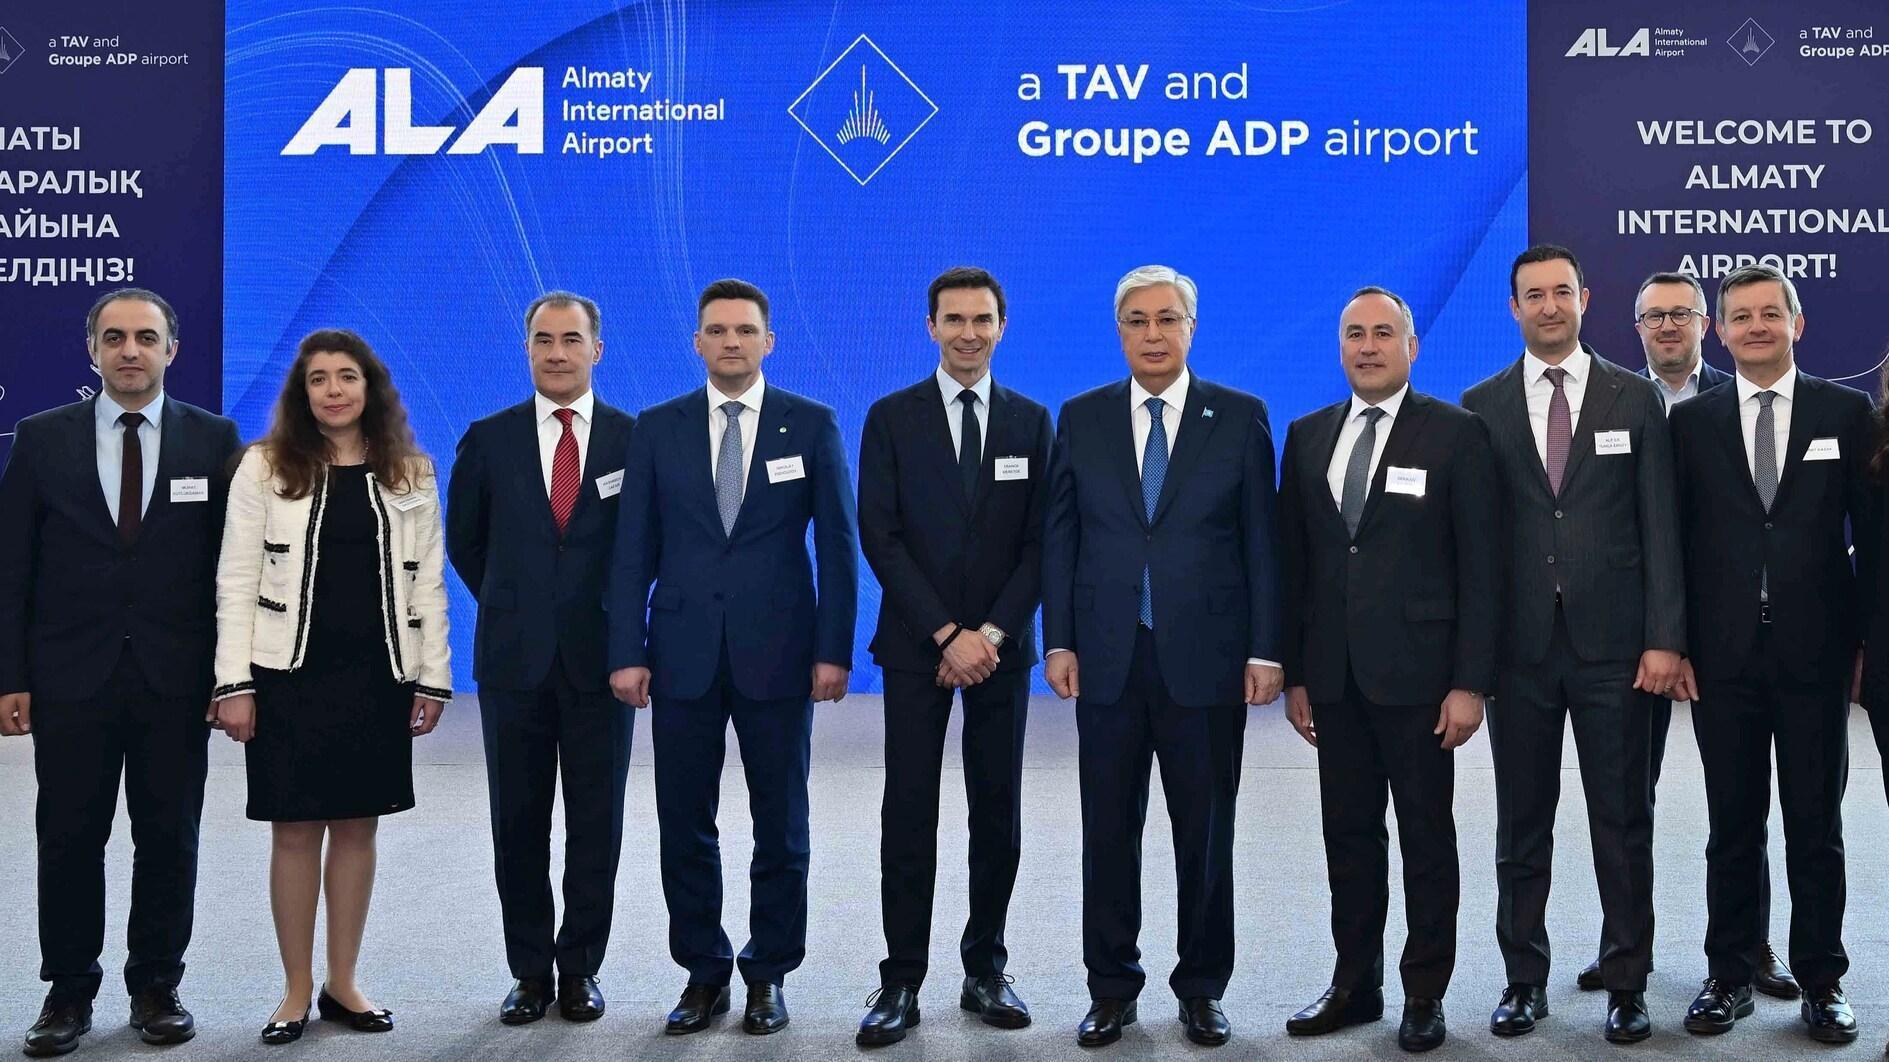 TAV opent nieuwe luchthaventerminal in Almaty in Kazachstan